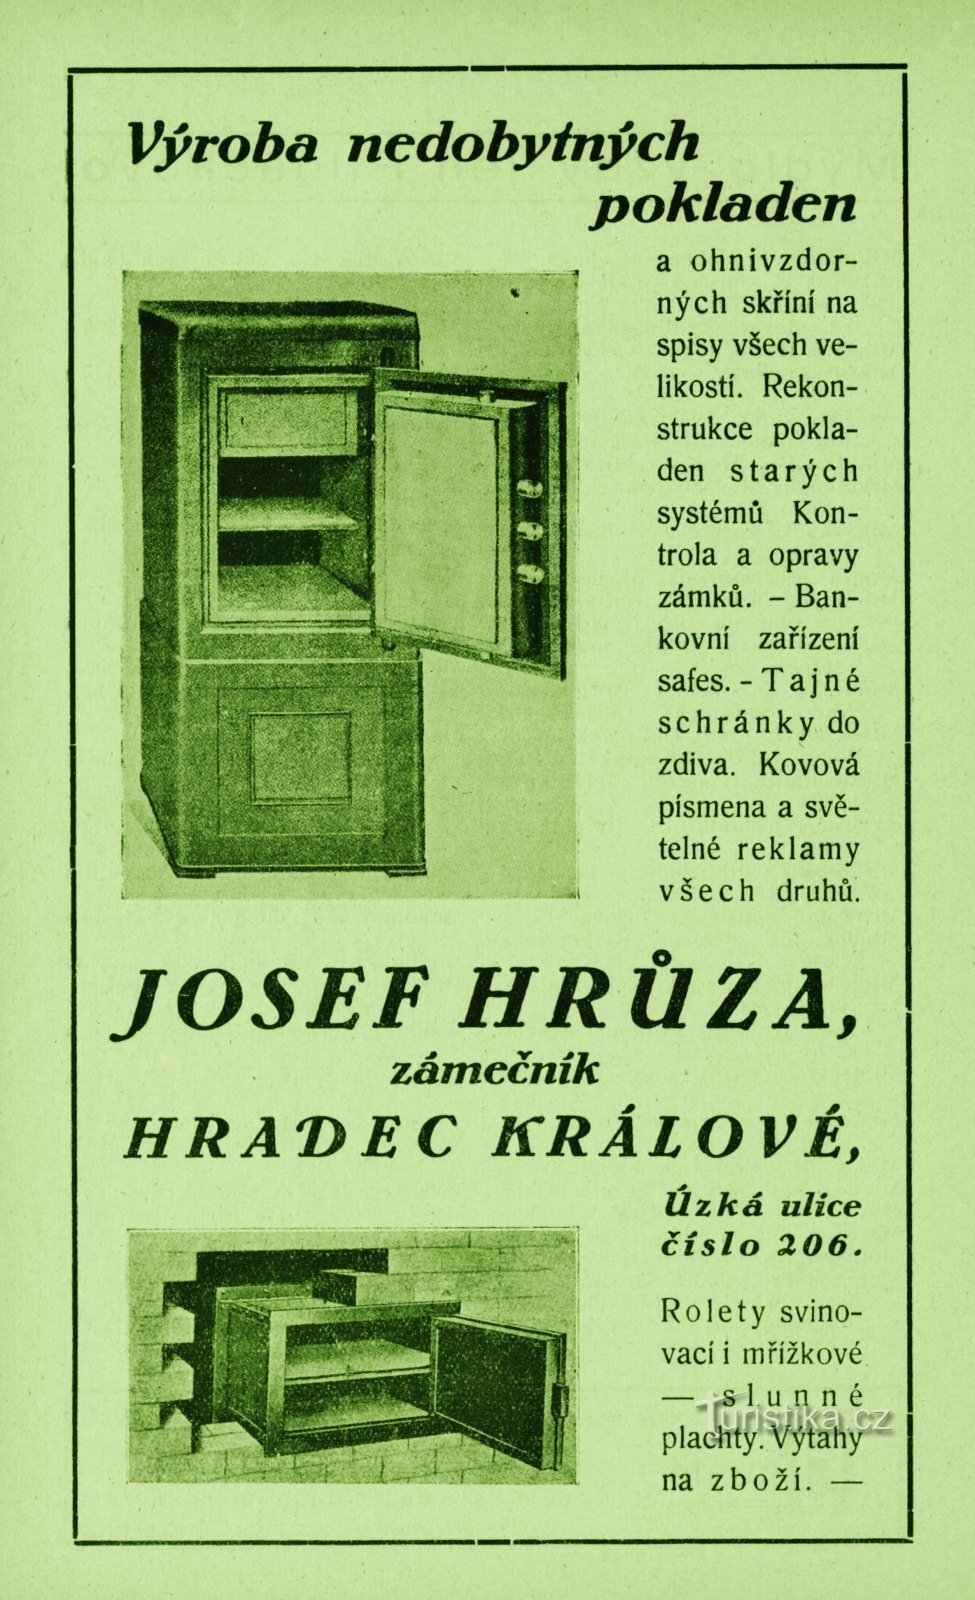 Suvremena reklama bravarske radionice Josefa Hrůze iz 1931.